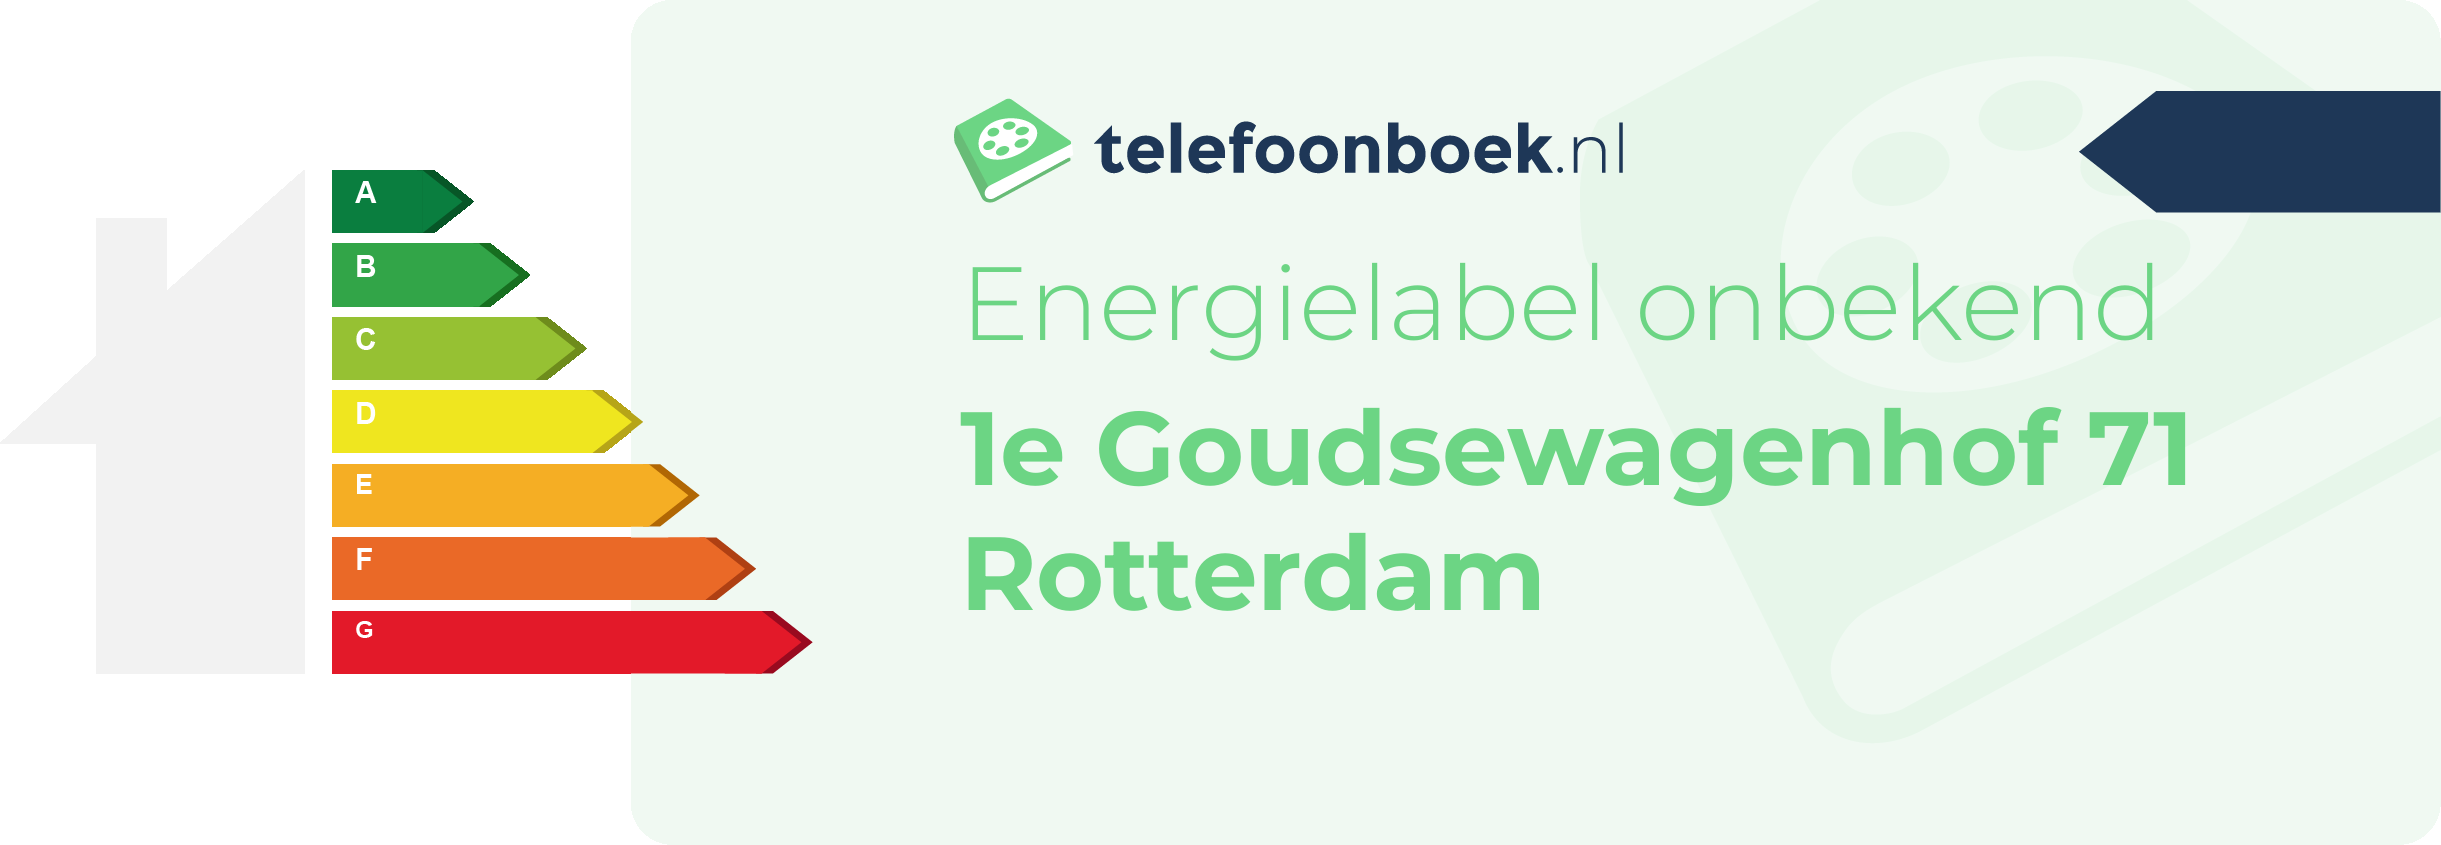 Energielabel 1e Goudsewagenhof 71 Rotterdam